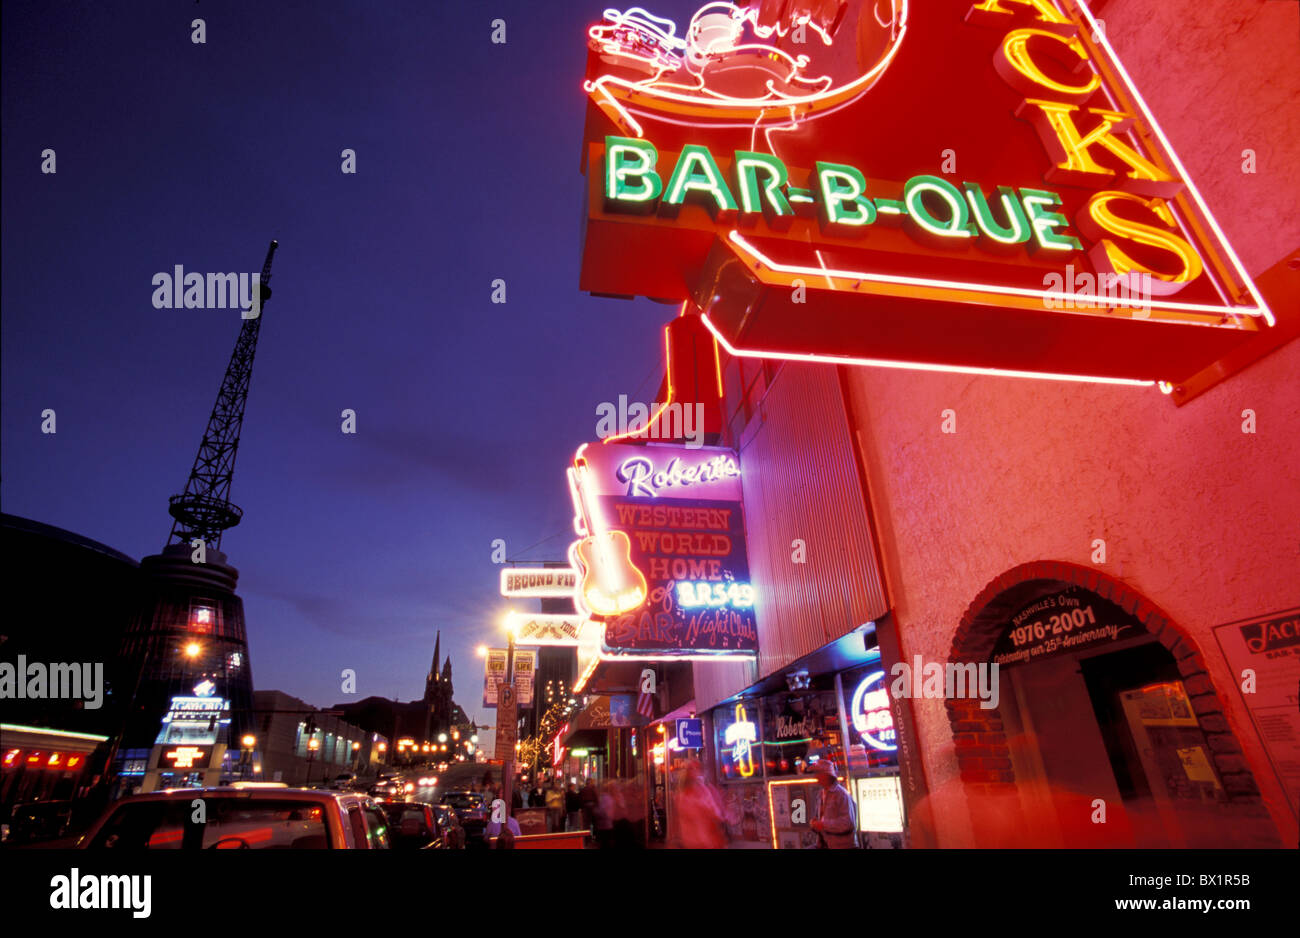 Werbung bei Nacht Bar Broadway-Business-Club Downtown beenden Nashville Neon Neon Lichter Nacht nightl Stockfoto